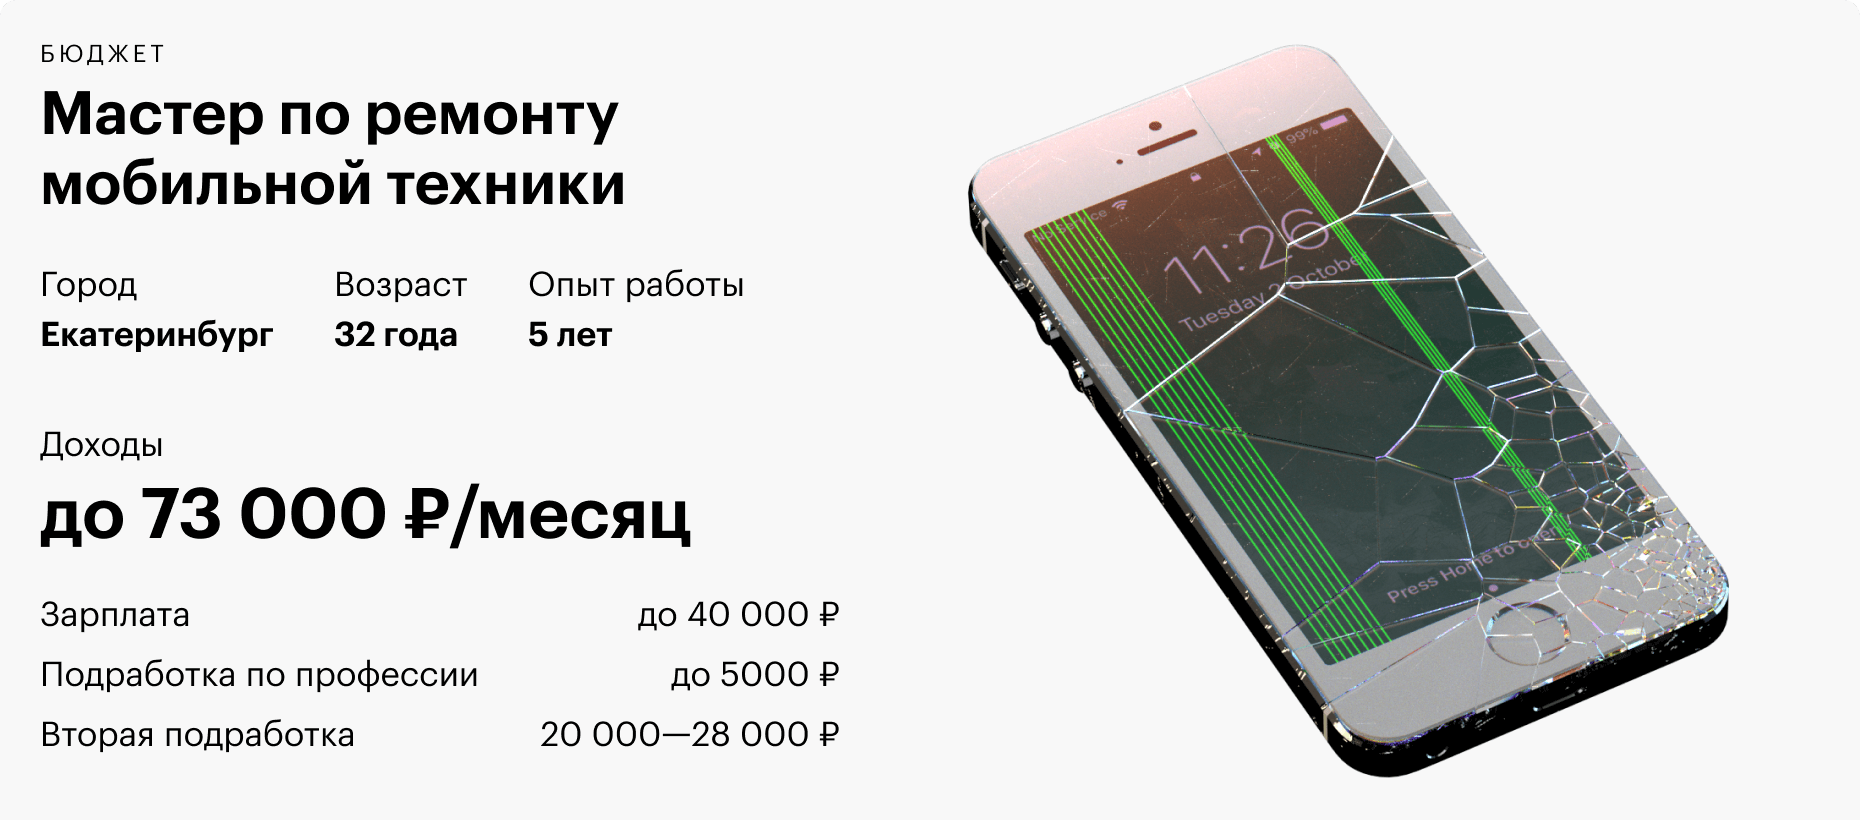 Где Купить Дешевле Ноутбук В Екатеринбурге